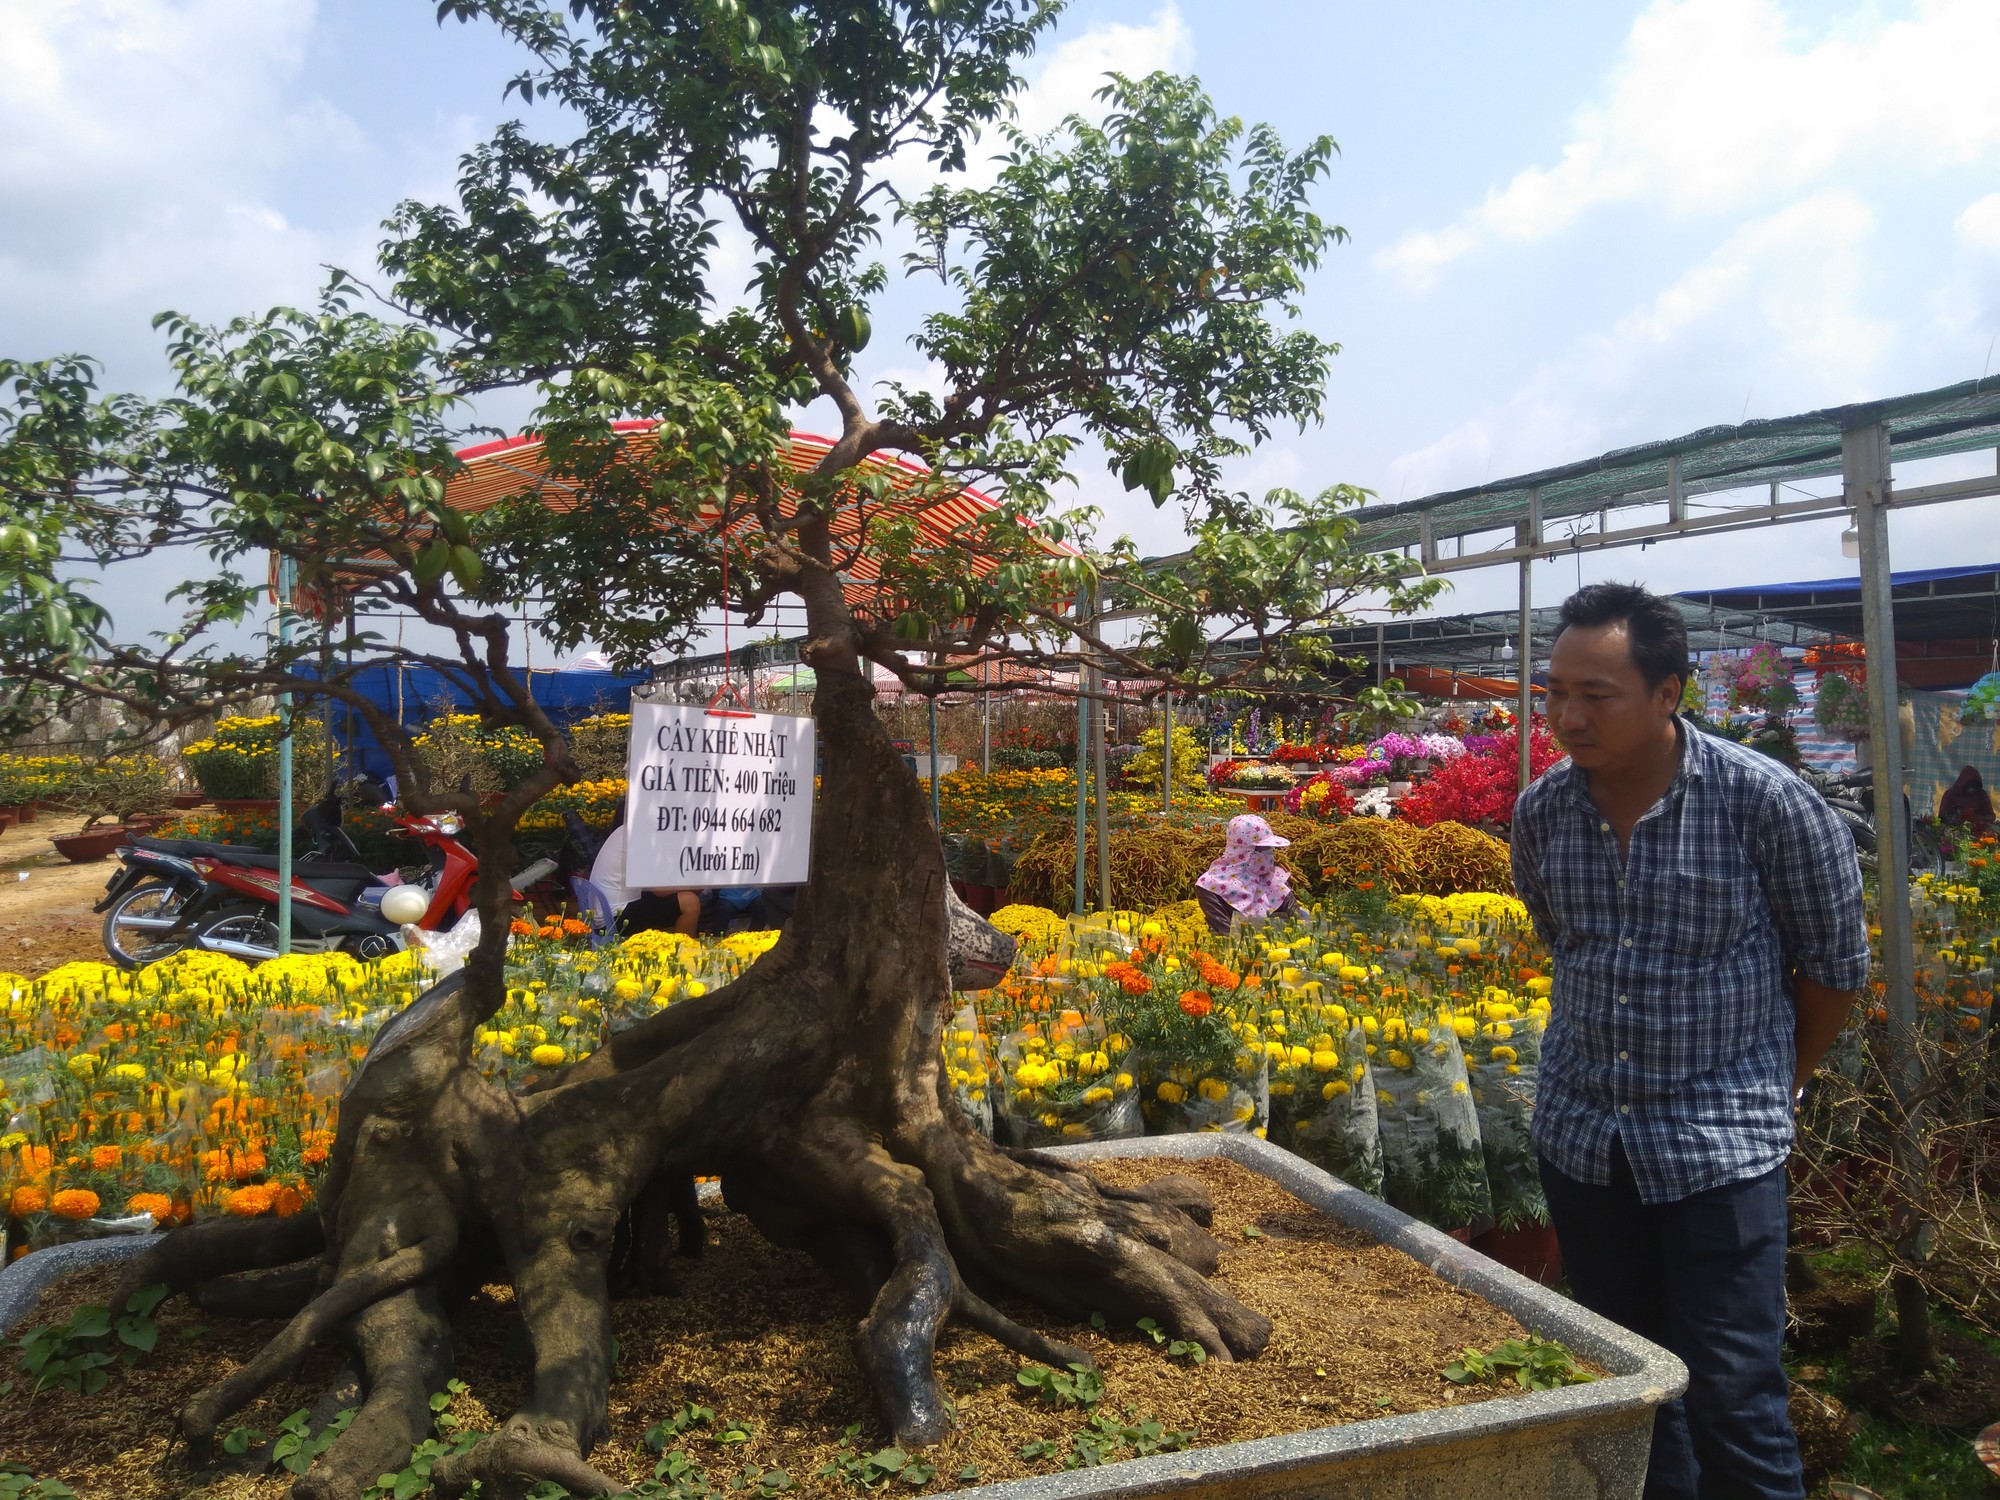 Chiêm ngưỡng cây khế hình chó, dừa 15 ngọn giá nửa tỉ ở Phú Quốc - Ảnh 4.